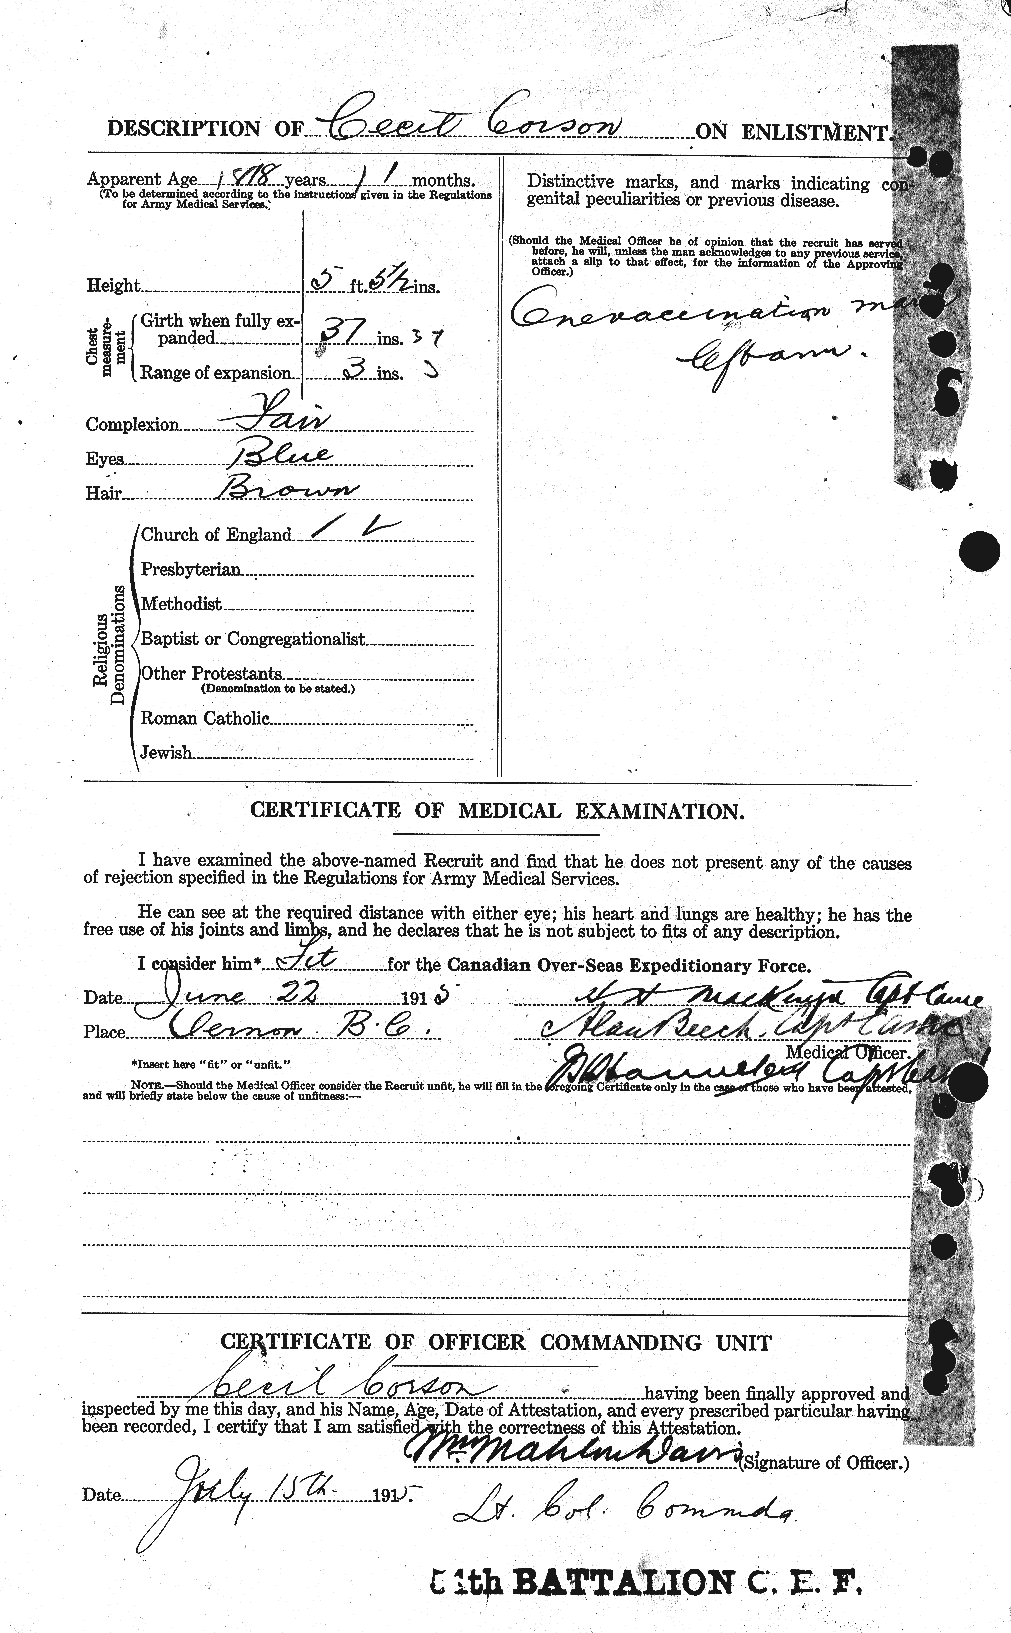 Dossiers du Personnel de la Première Guerre mondiale - CEC 054207b